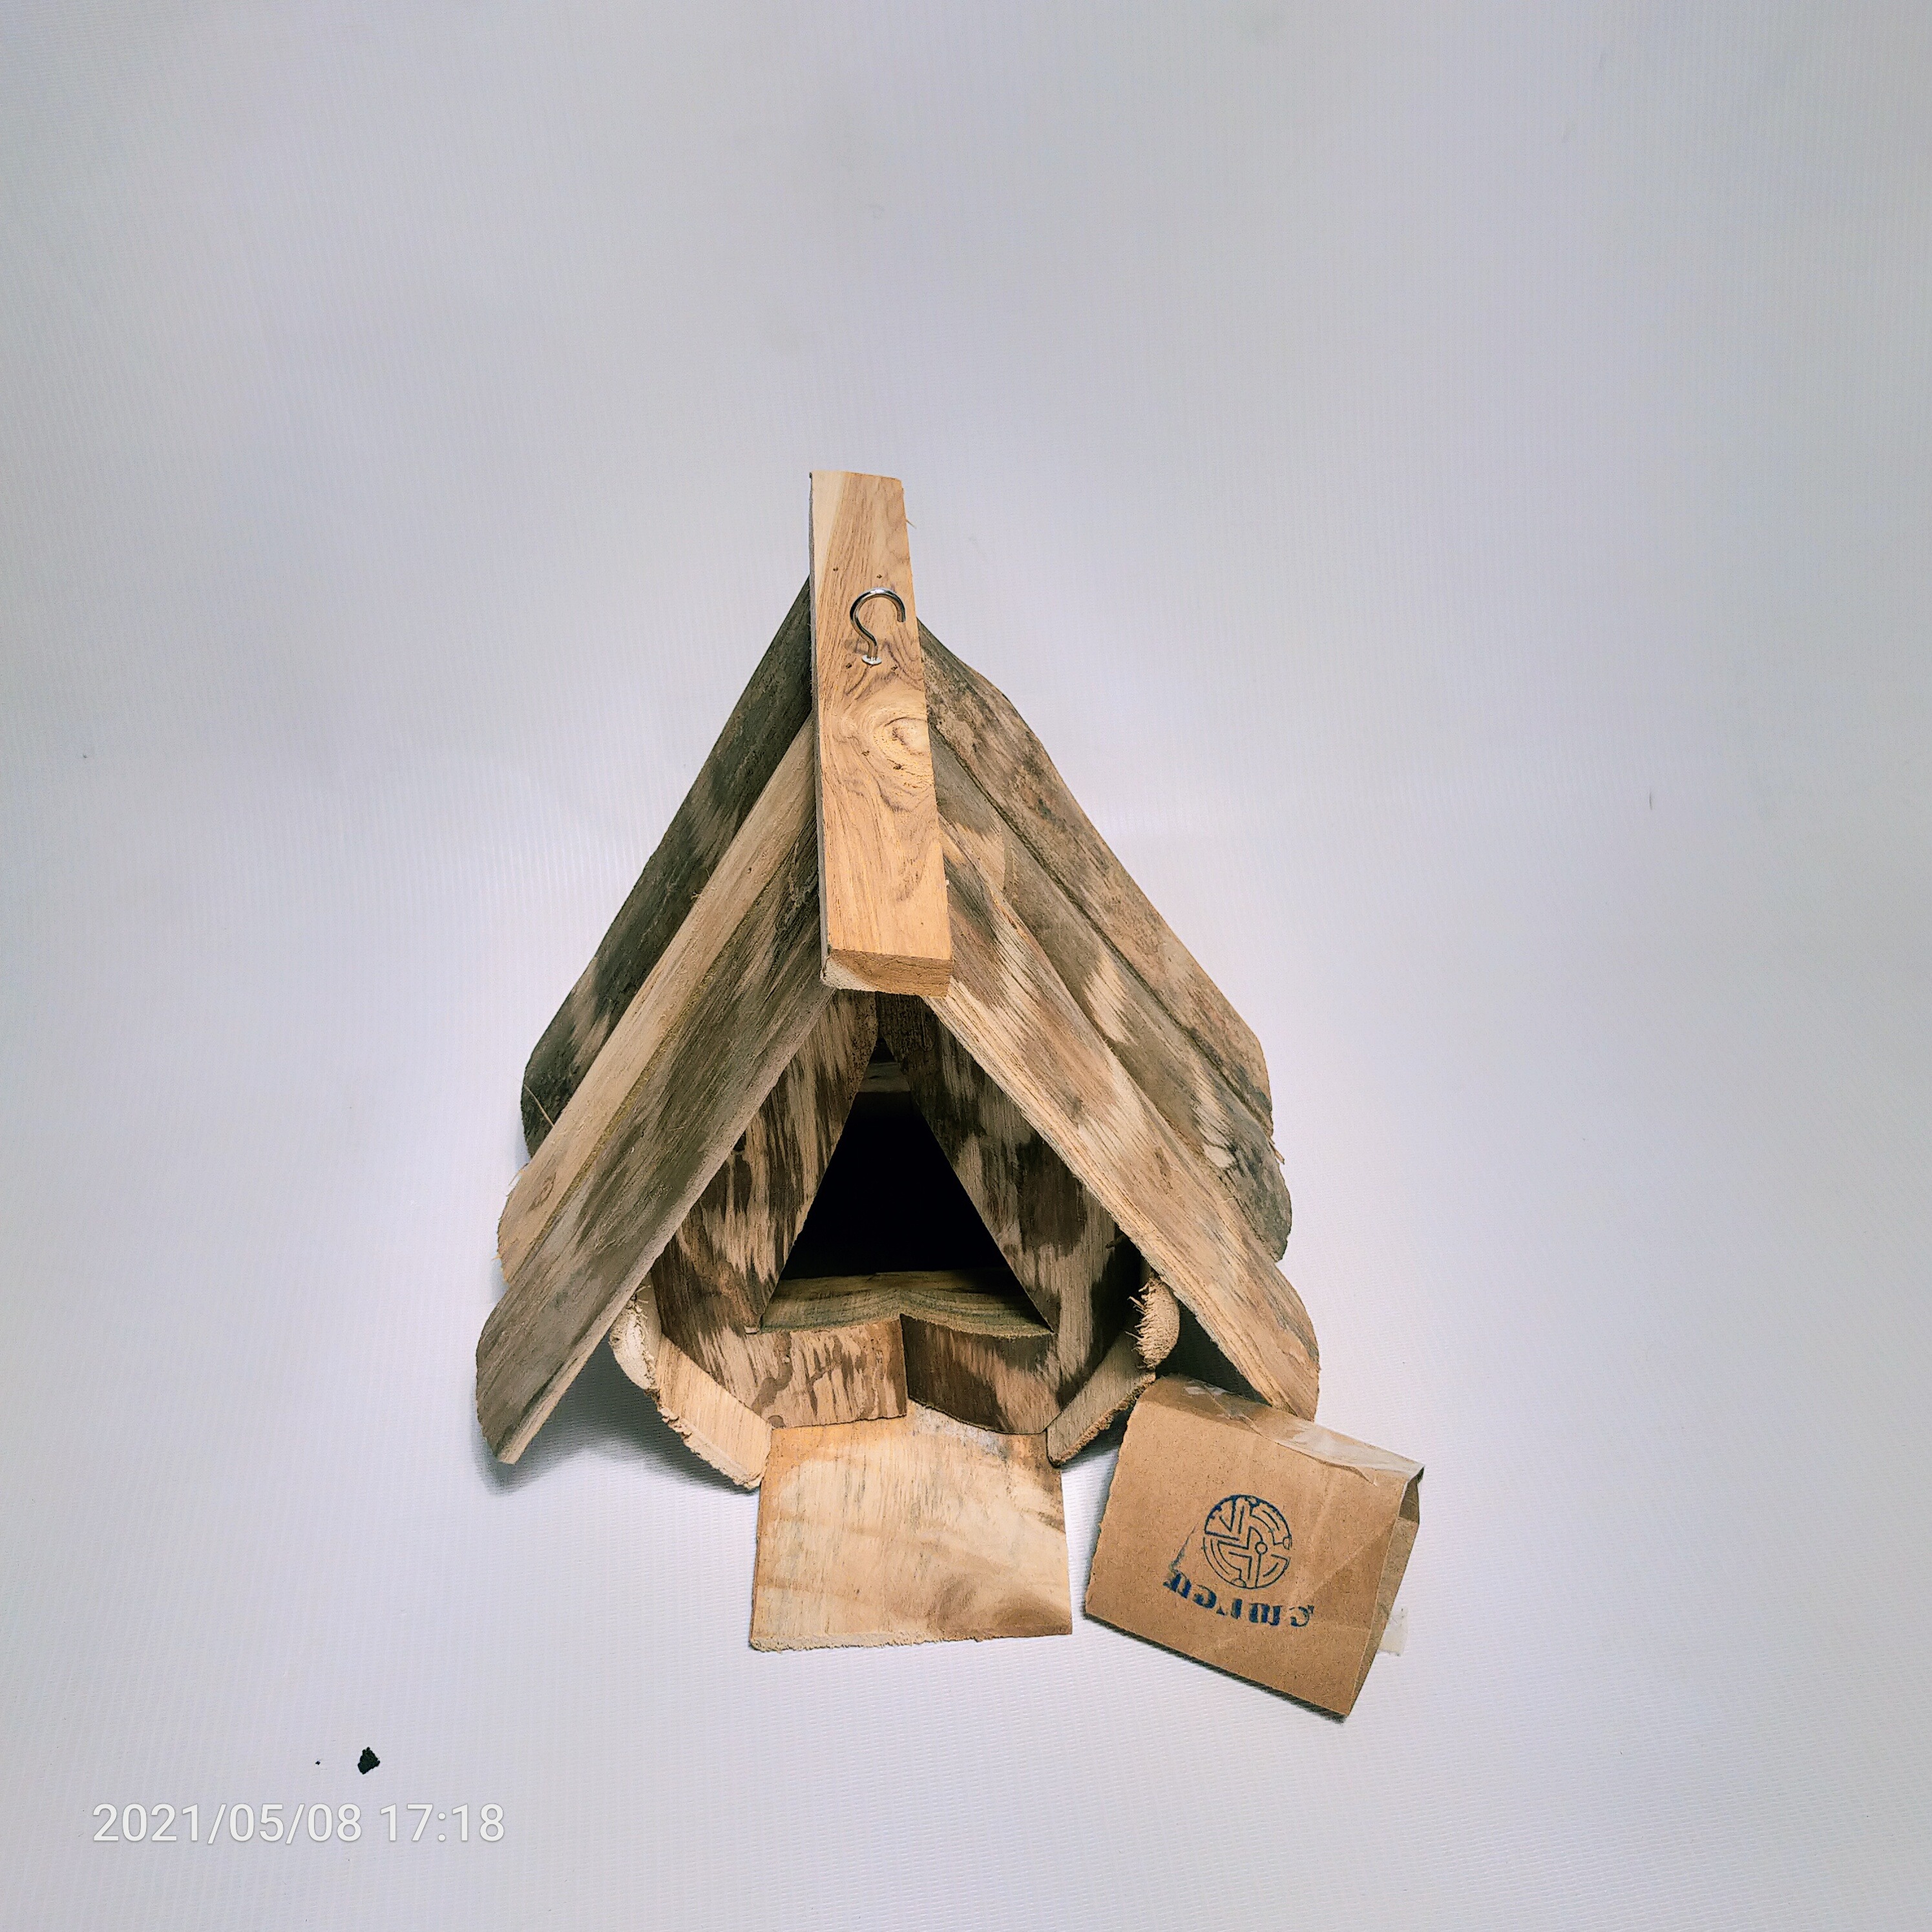 รังนกไม้สัก แขวน Bird House กล่องไม้นกต่อ ต่อนก งานดิบ/ไม่ทำสี <<กอ เฌอ เฟอร์นิเจอร์ จ.แพร่